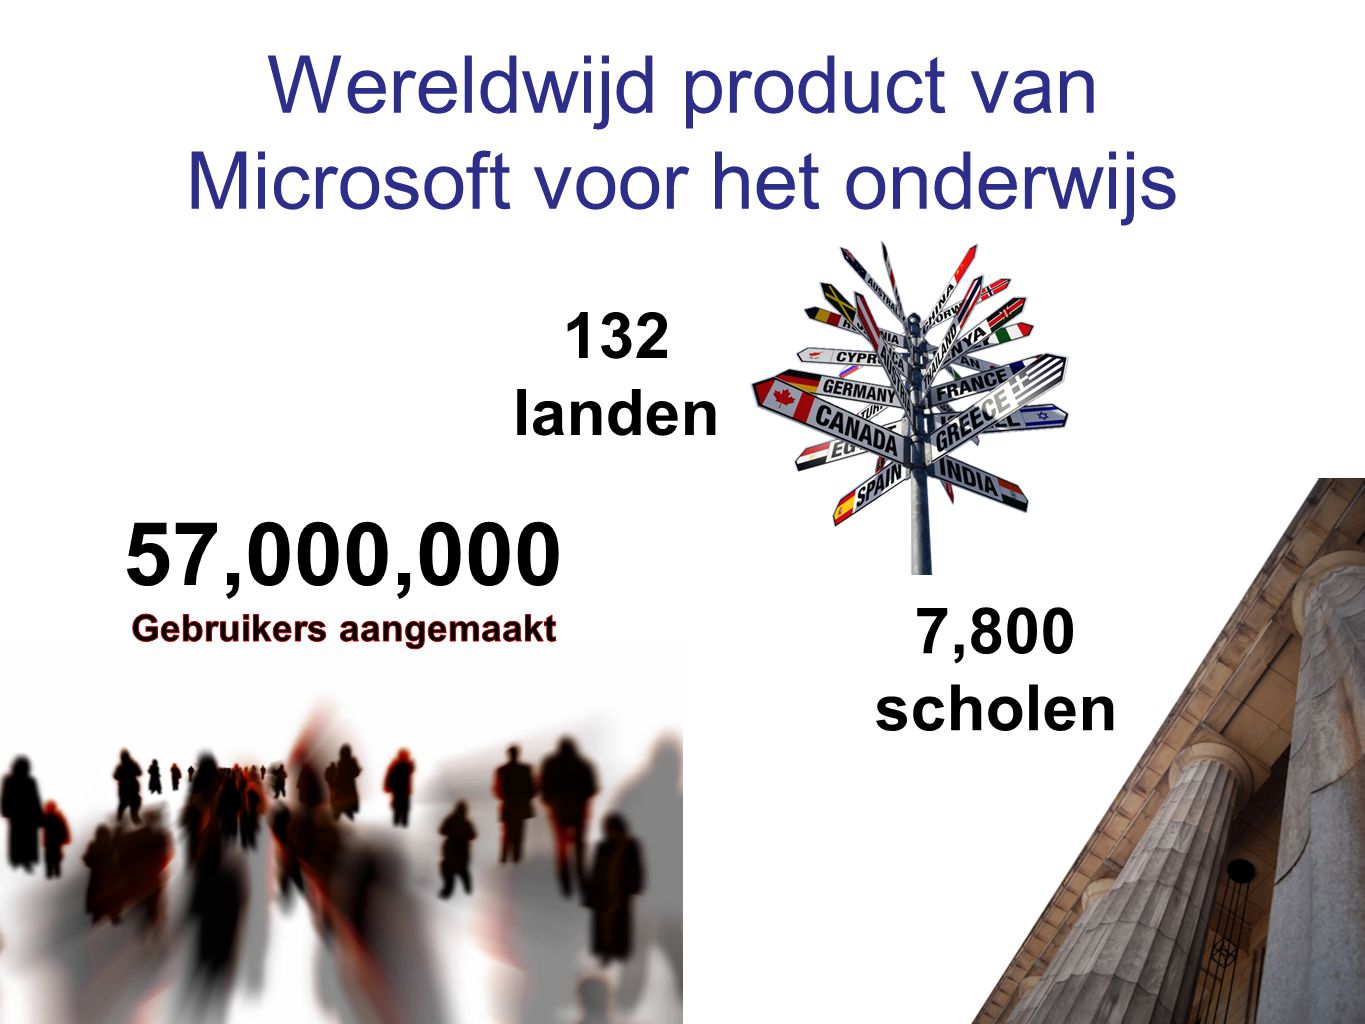 Wereldwijd product van Microsoft voor het onderwijs